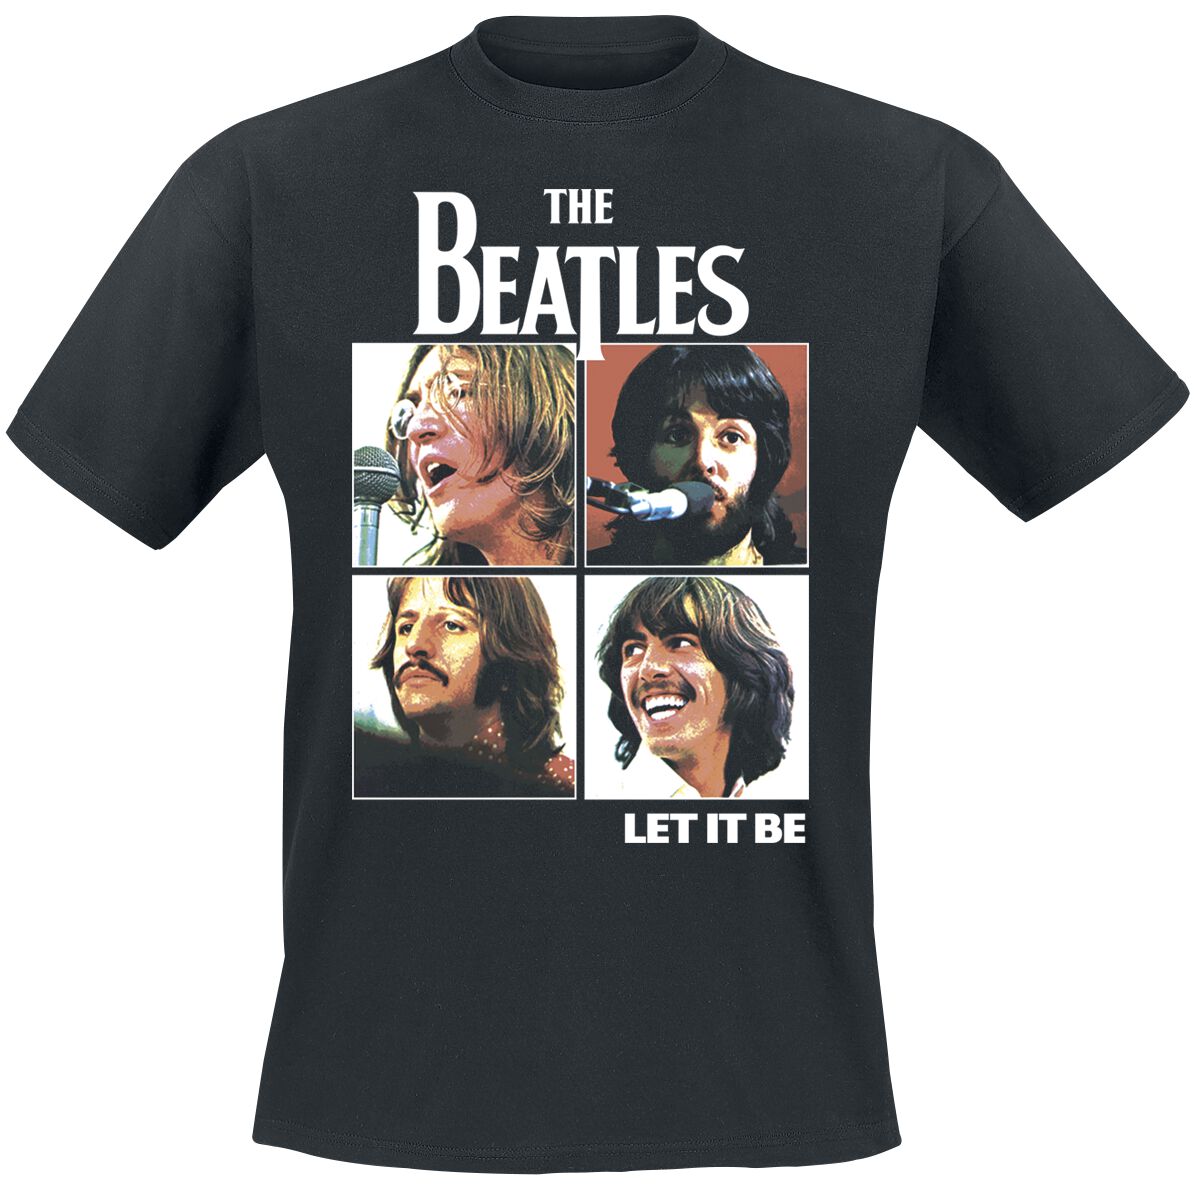 The Beatles T-Shirt - Let it be - S bis 3XL - für Männer - Größe XXL - schwarz  - Lizenziertes Merchandise!